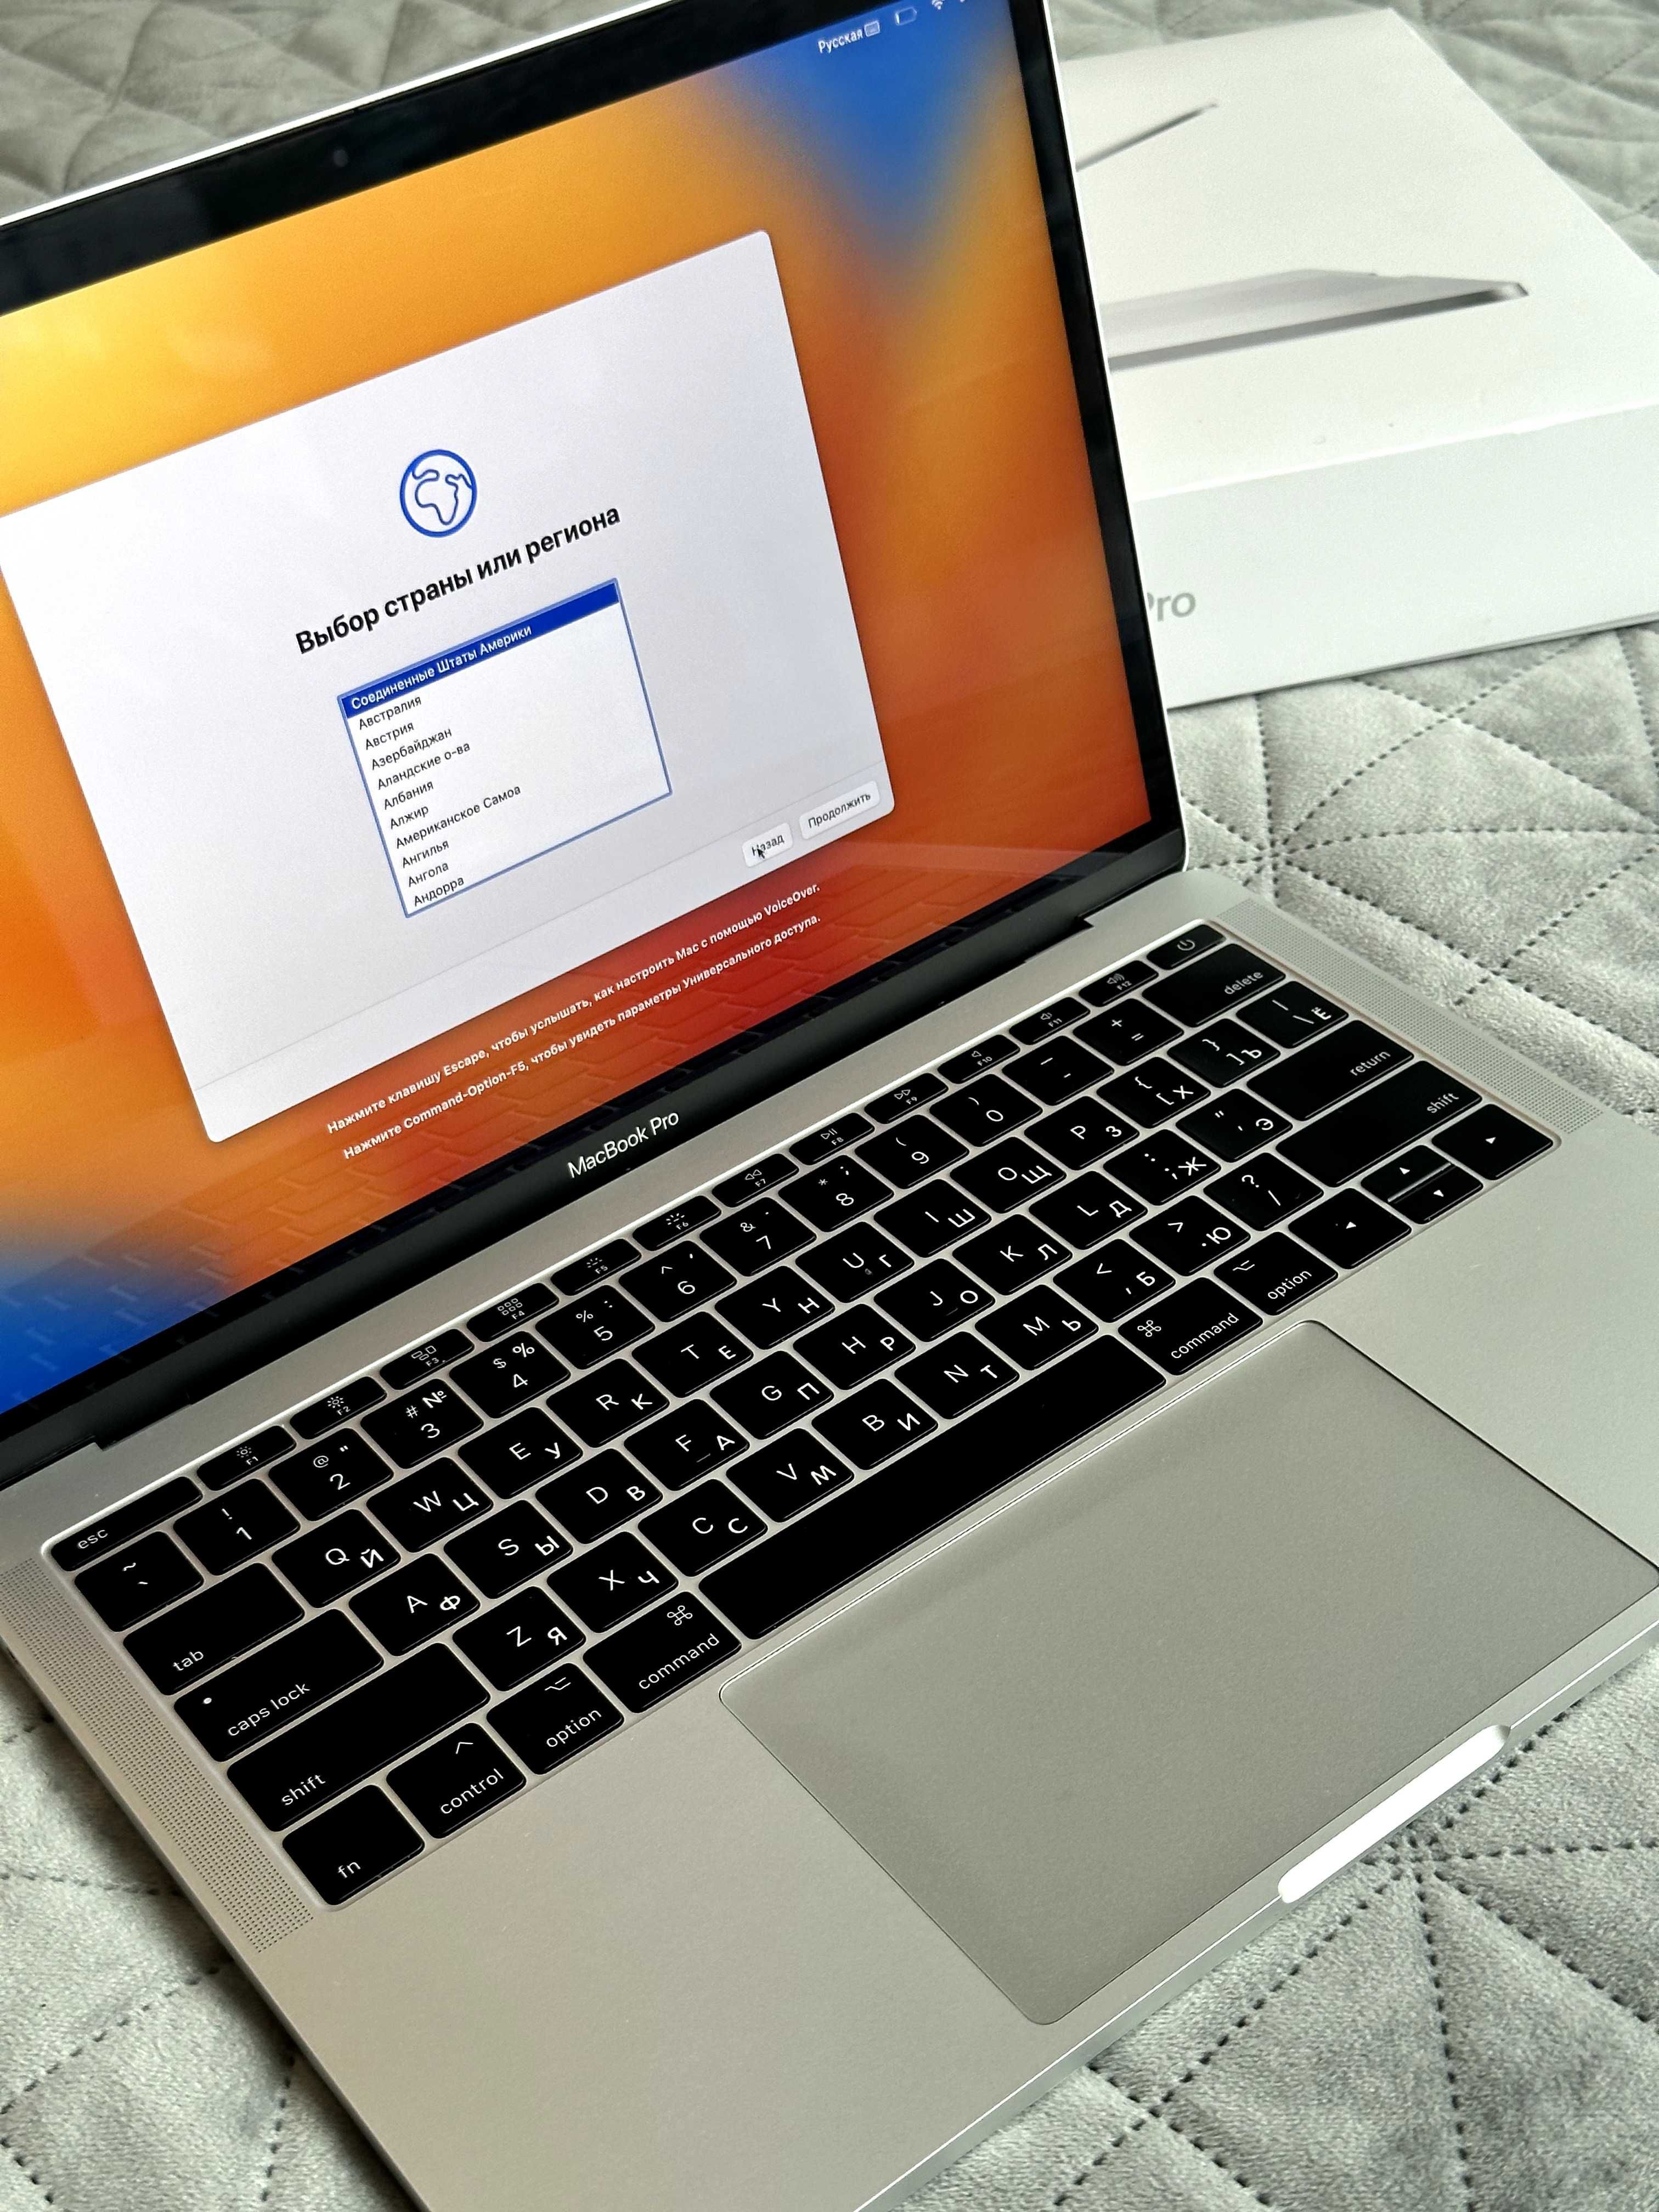 MacBook Pro 2017 Silver